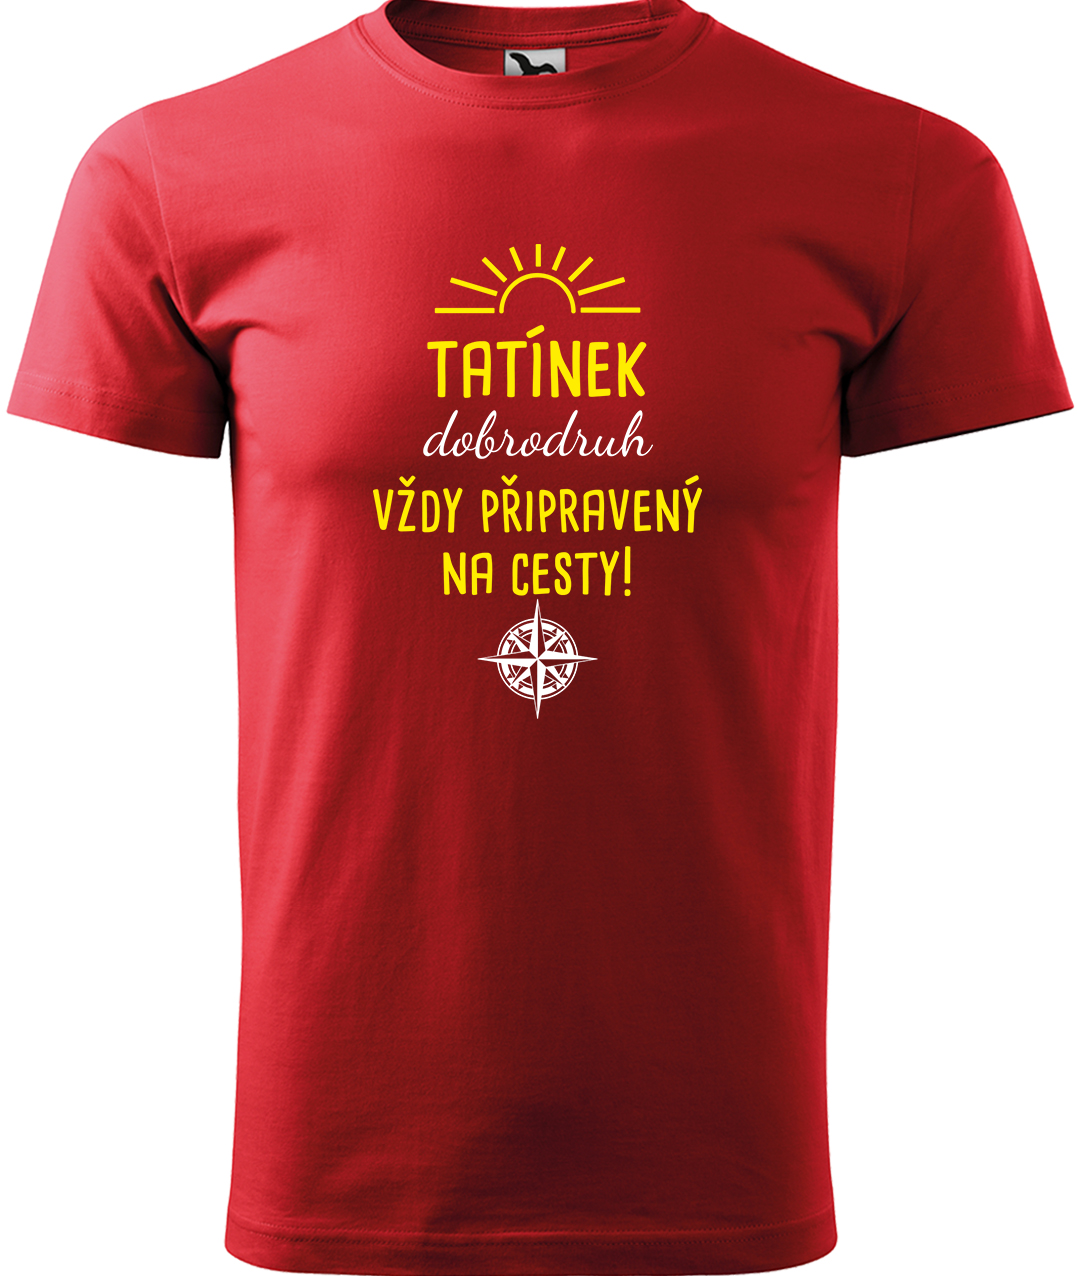 Pánské cestovatelské tričko - Tatínek dobrodruh Velikost: L, Barva: Červená (07), Střih: pánský